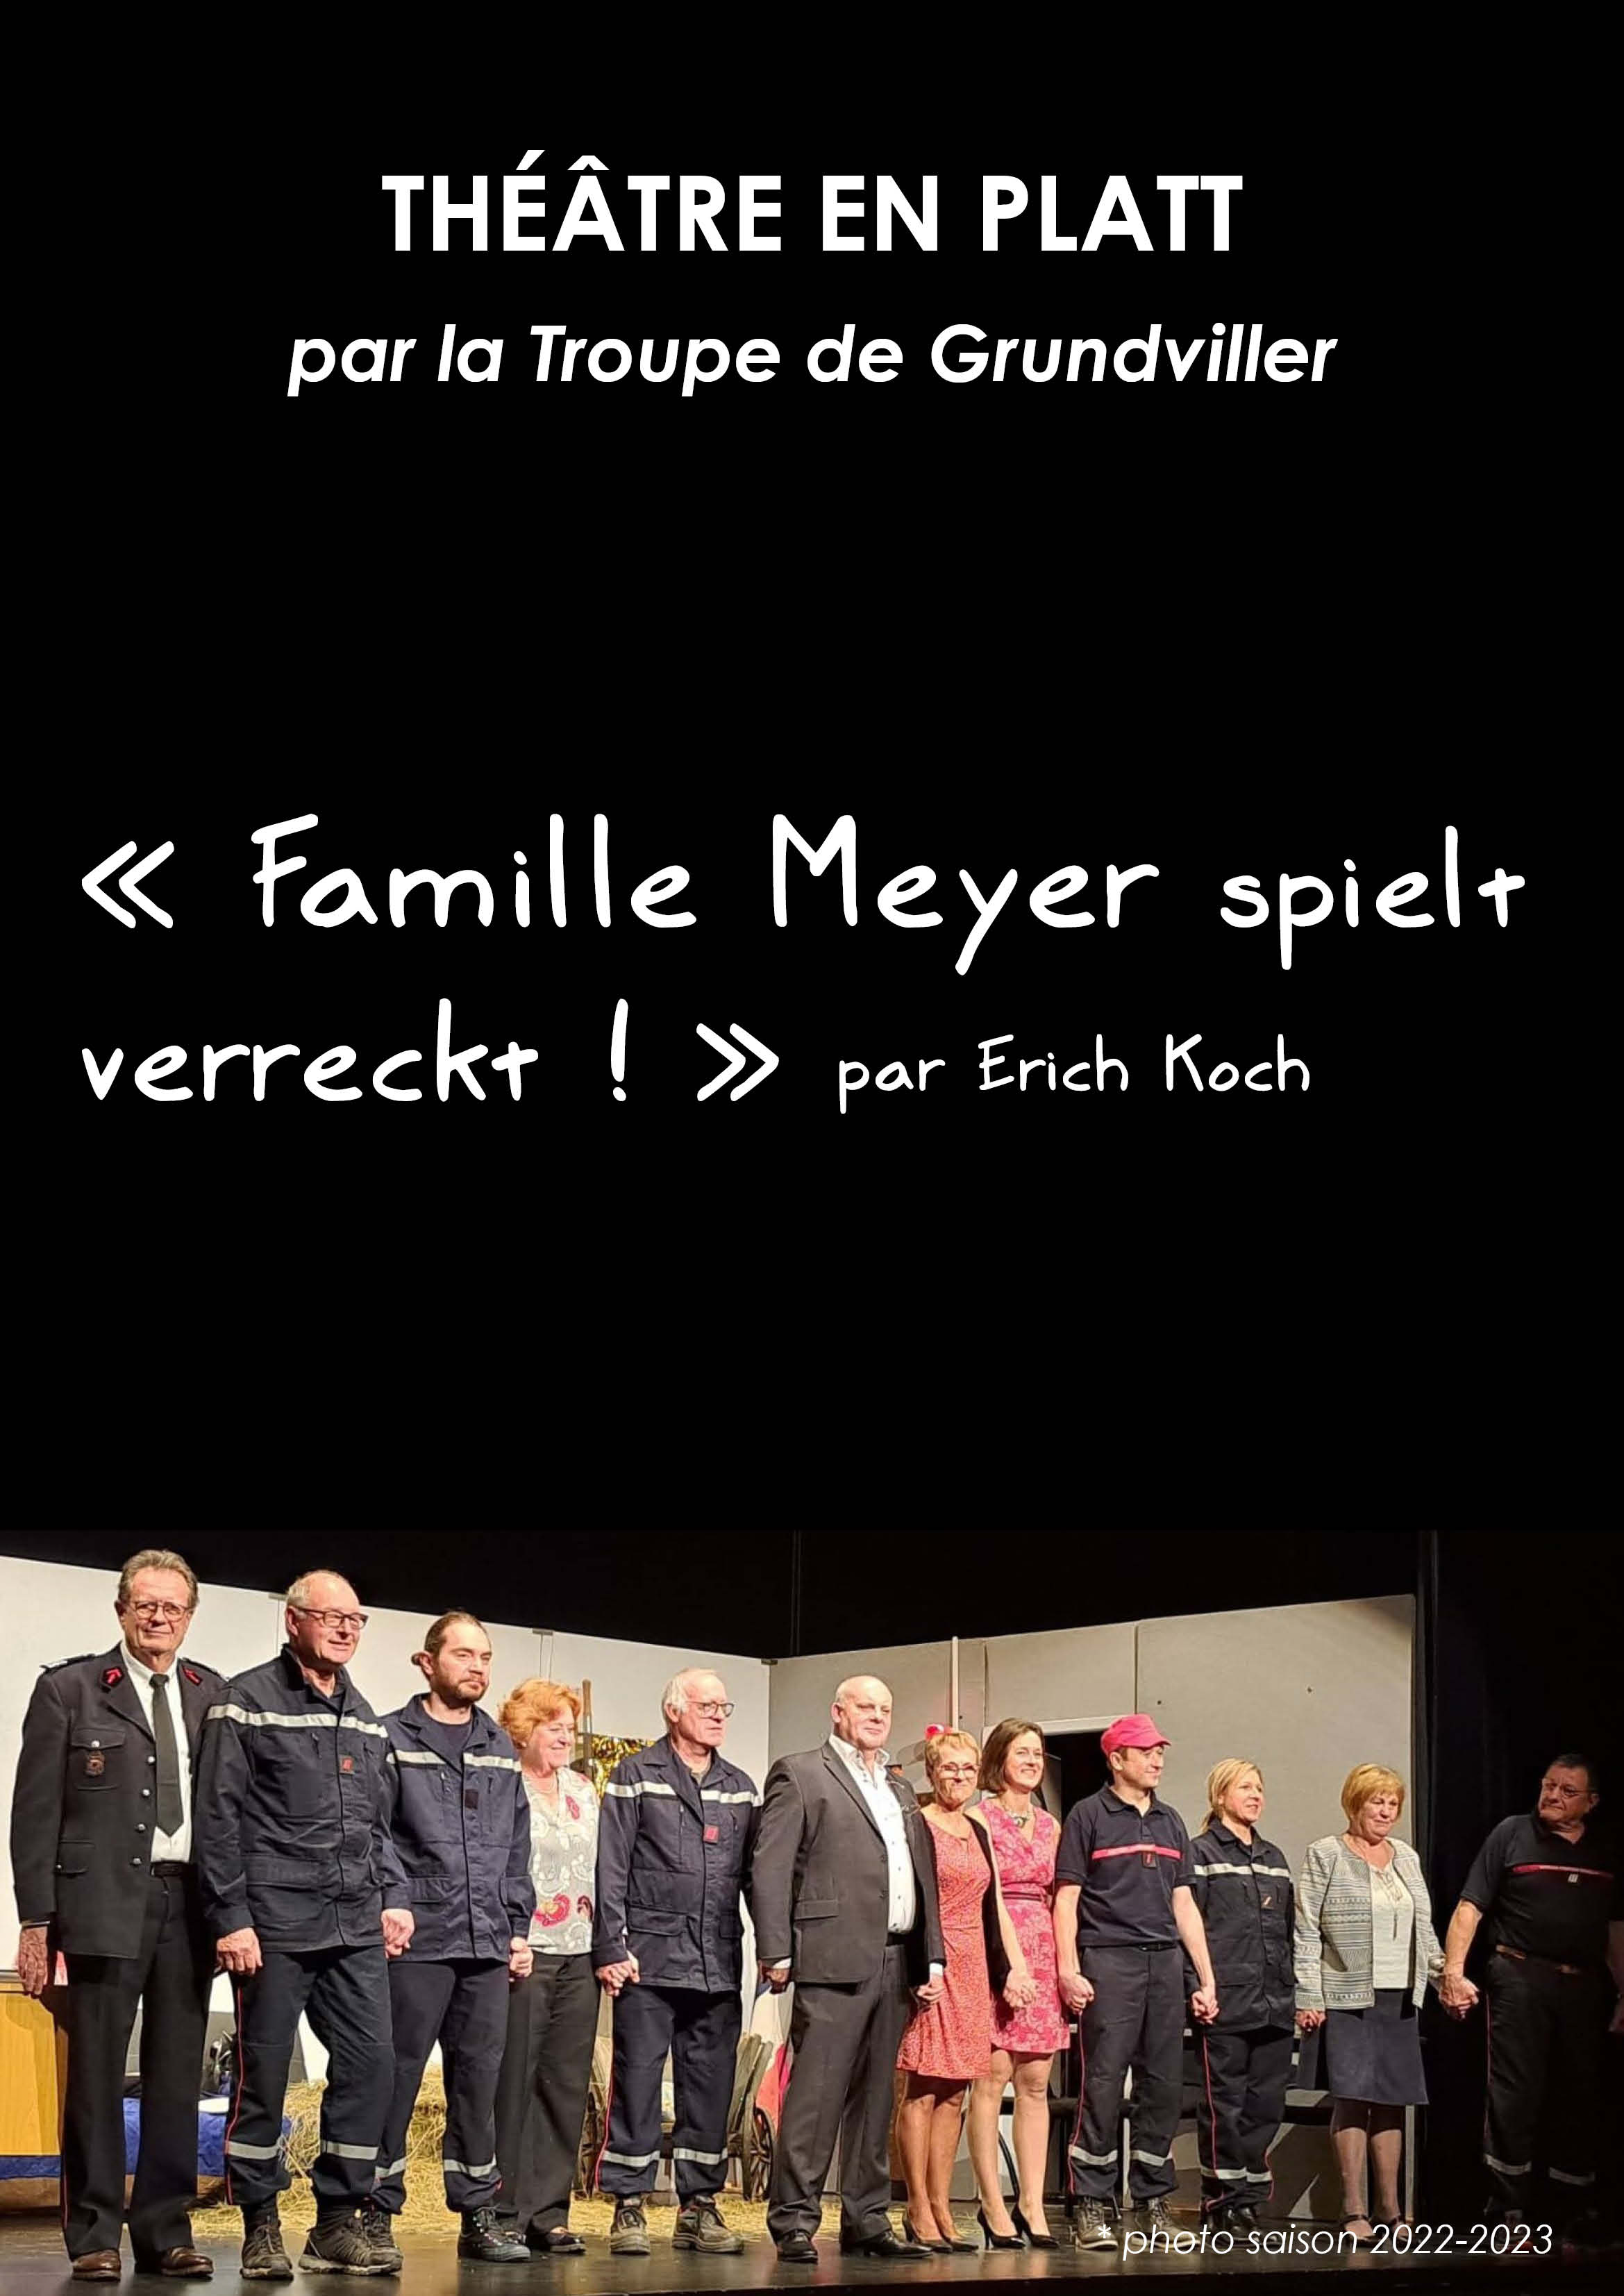 Théâtre en Platt - "Famille Meyer spielt verreckt !" 